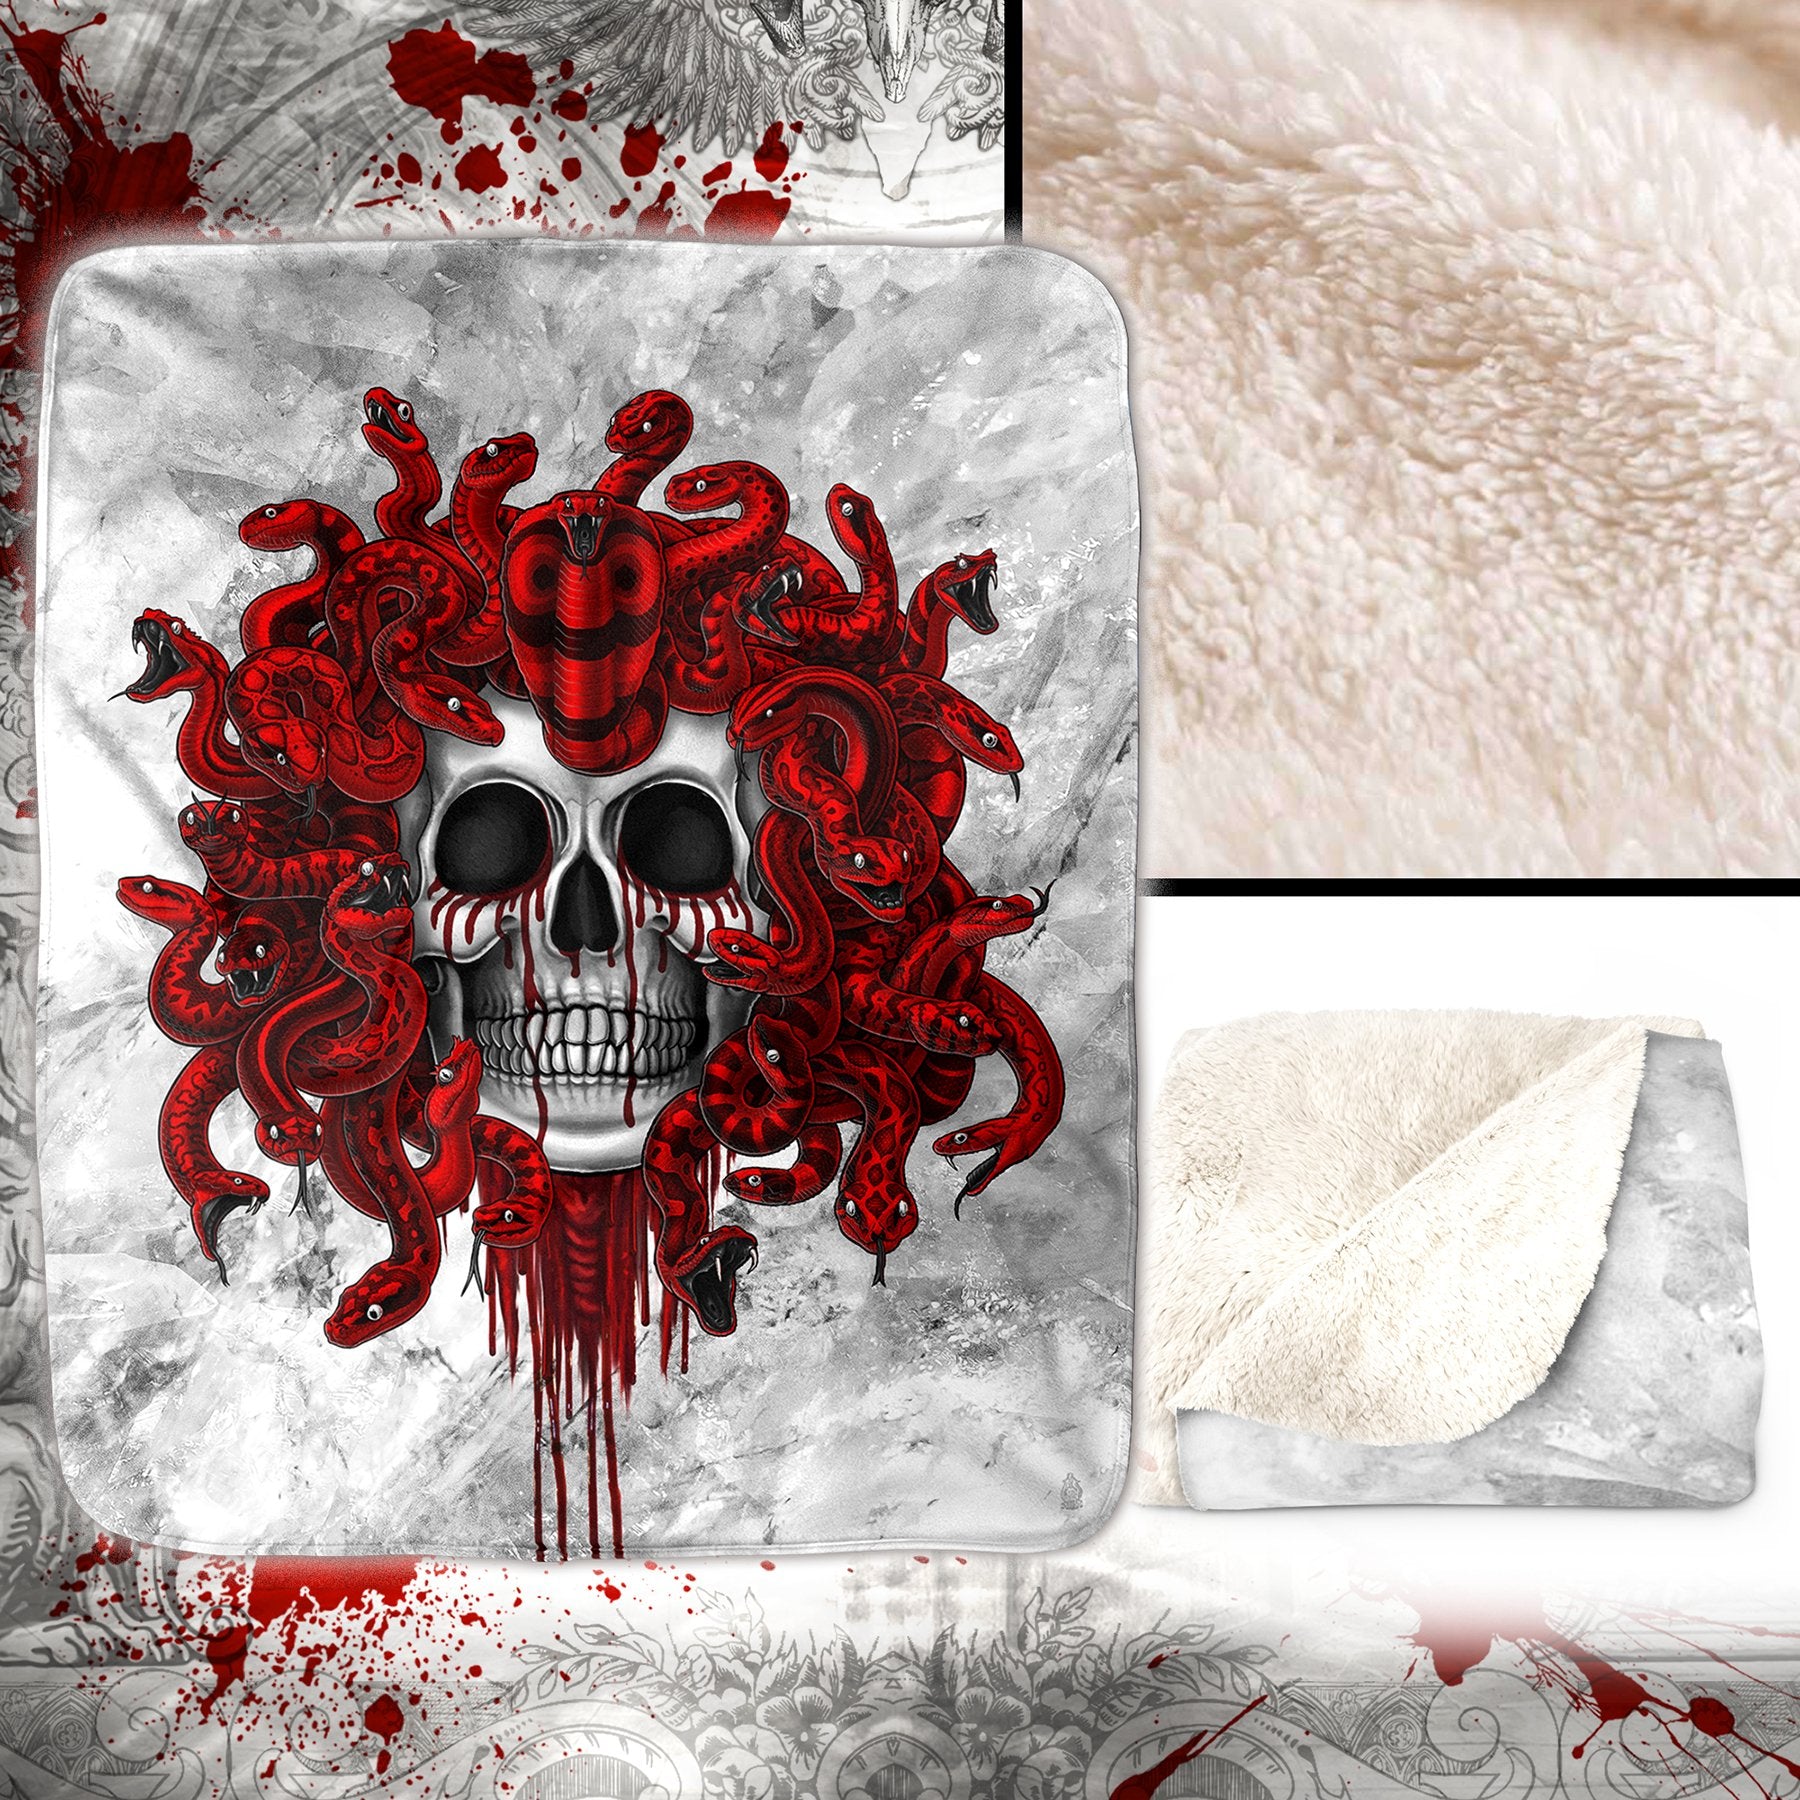 Skull Sherpa Fleece Throw Blanket, White Goth Home Decor, Alternative Art Gift - Medusa, 2 Faces & 3 Colors - Abysm Internal